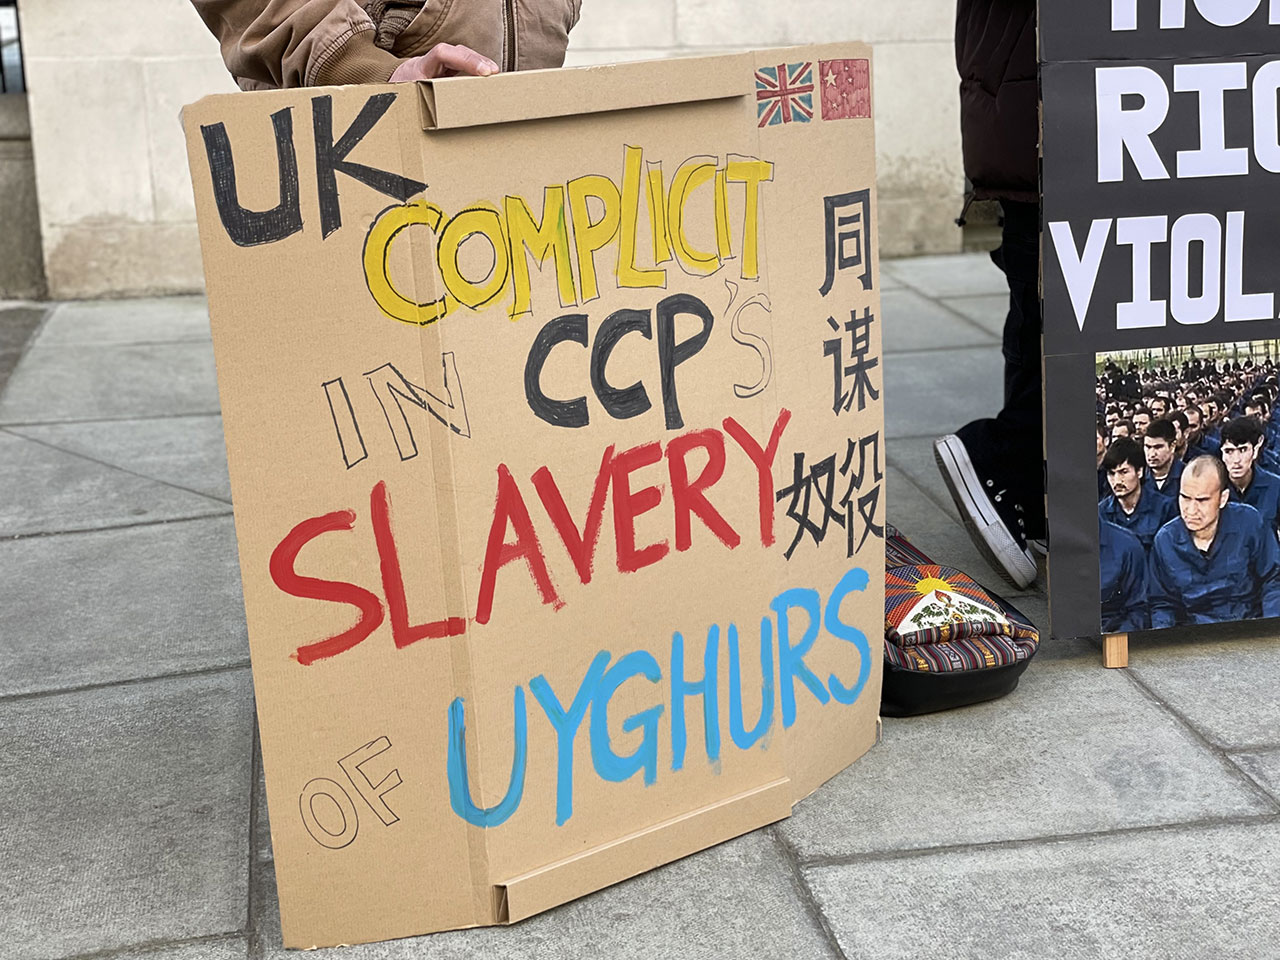 约三十名伦敦人权活动人士及新疆“再教育营”幸存者到英国外交部外示威，抗议新疆维吾尔自治区主席艾尔肯·吐尼亚孜（Erkin Tuniyaz）访问英国，并可能获安排和英国外交部官员会晤。 （吕熙摄）